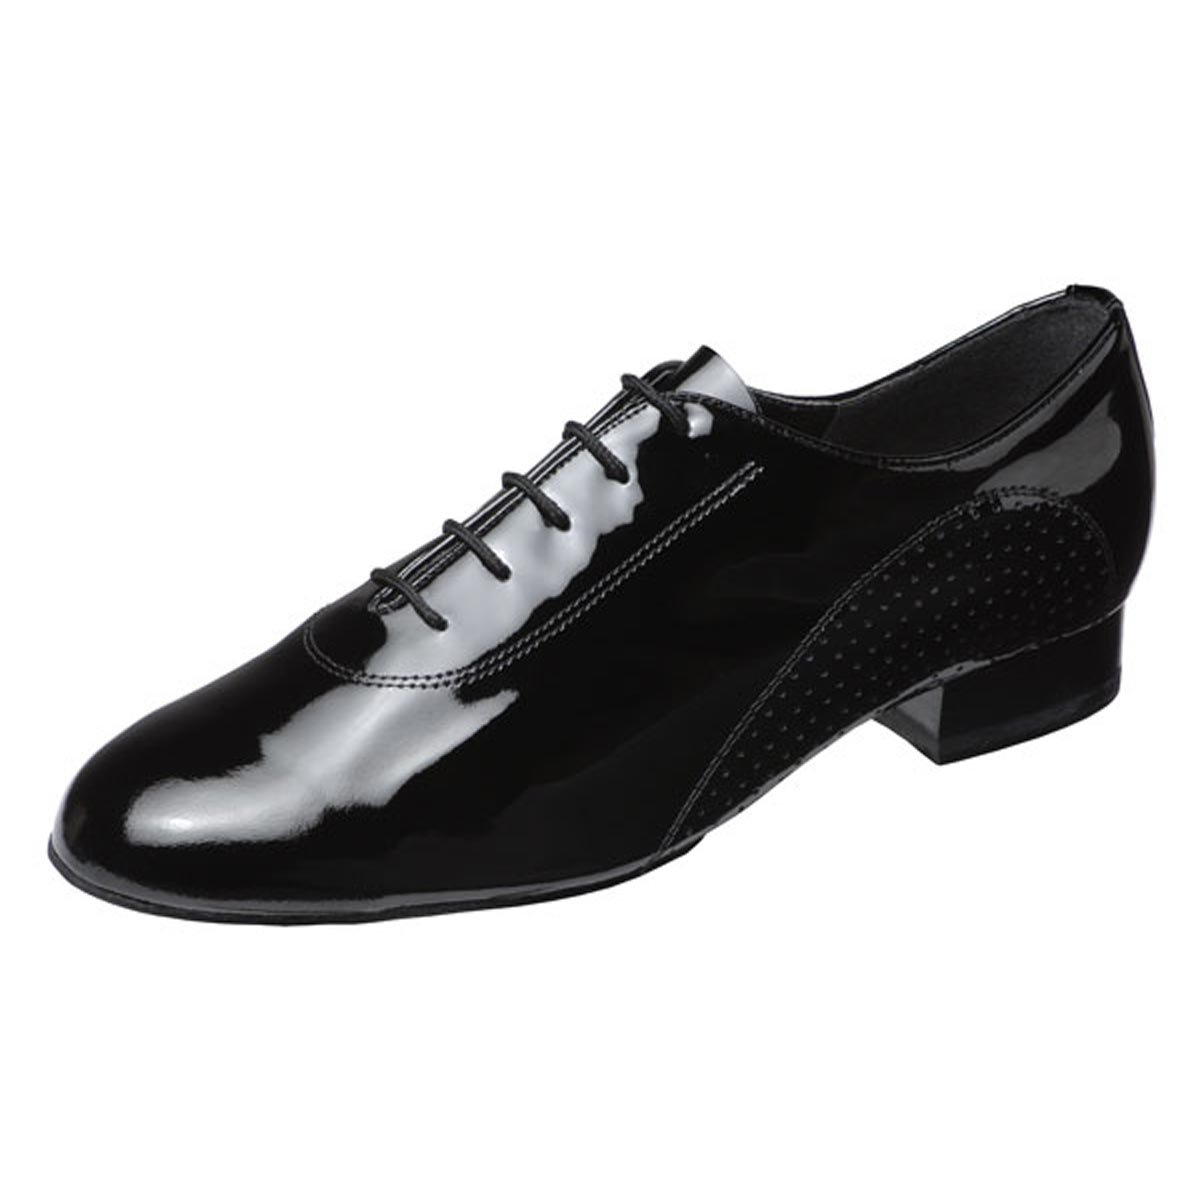 dance black shoes